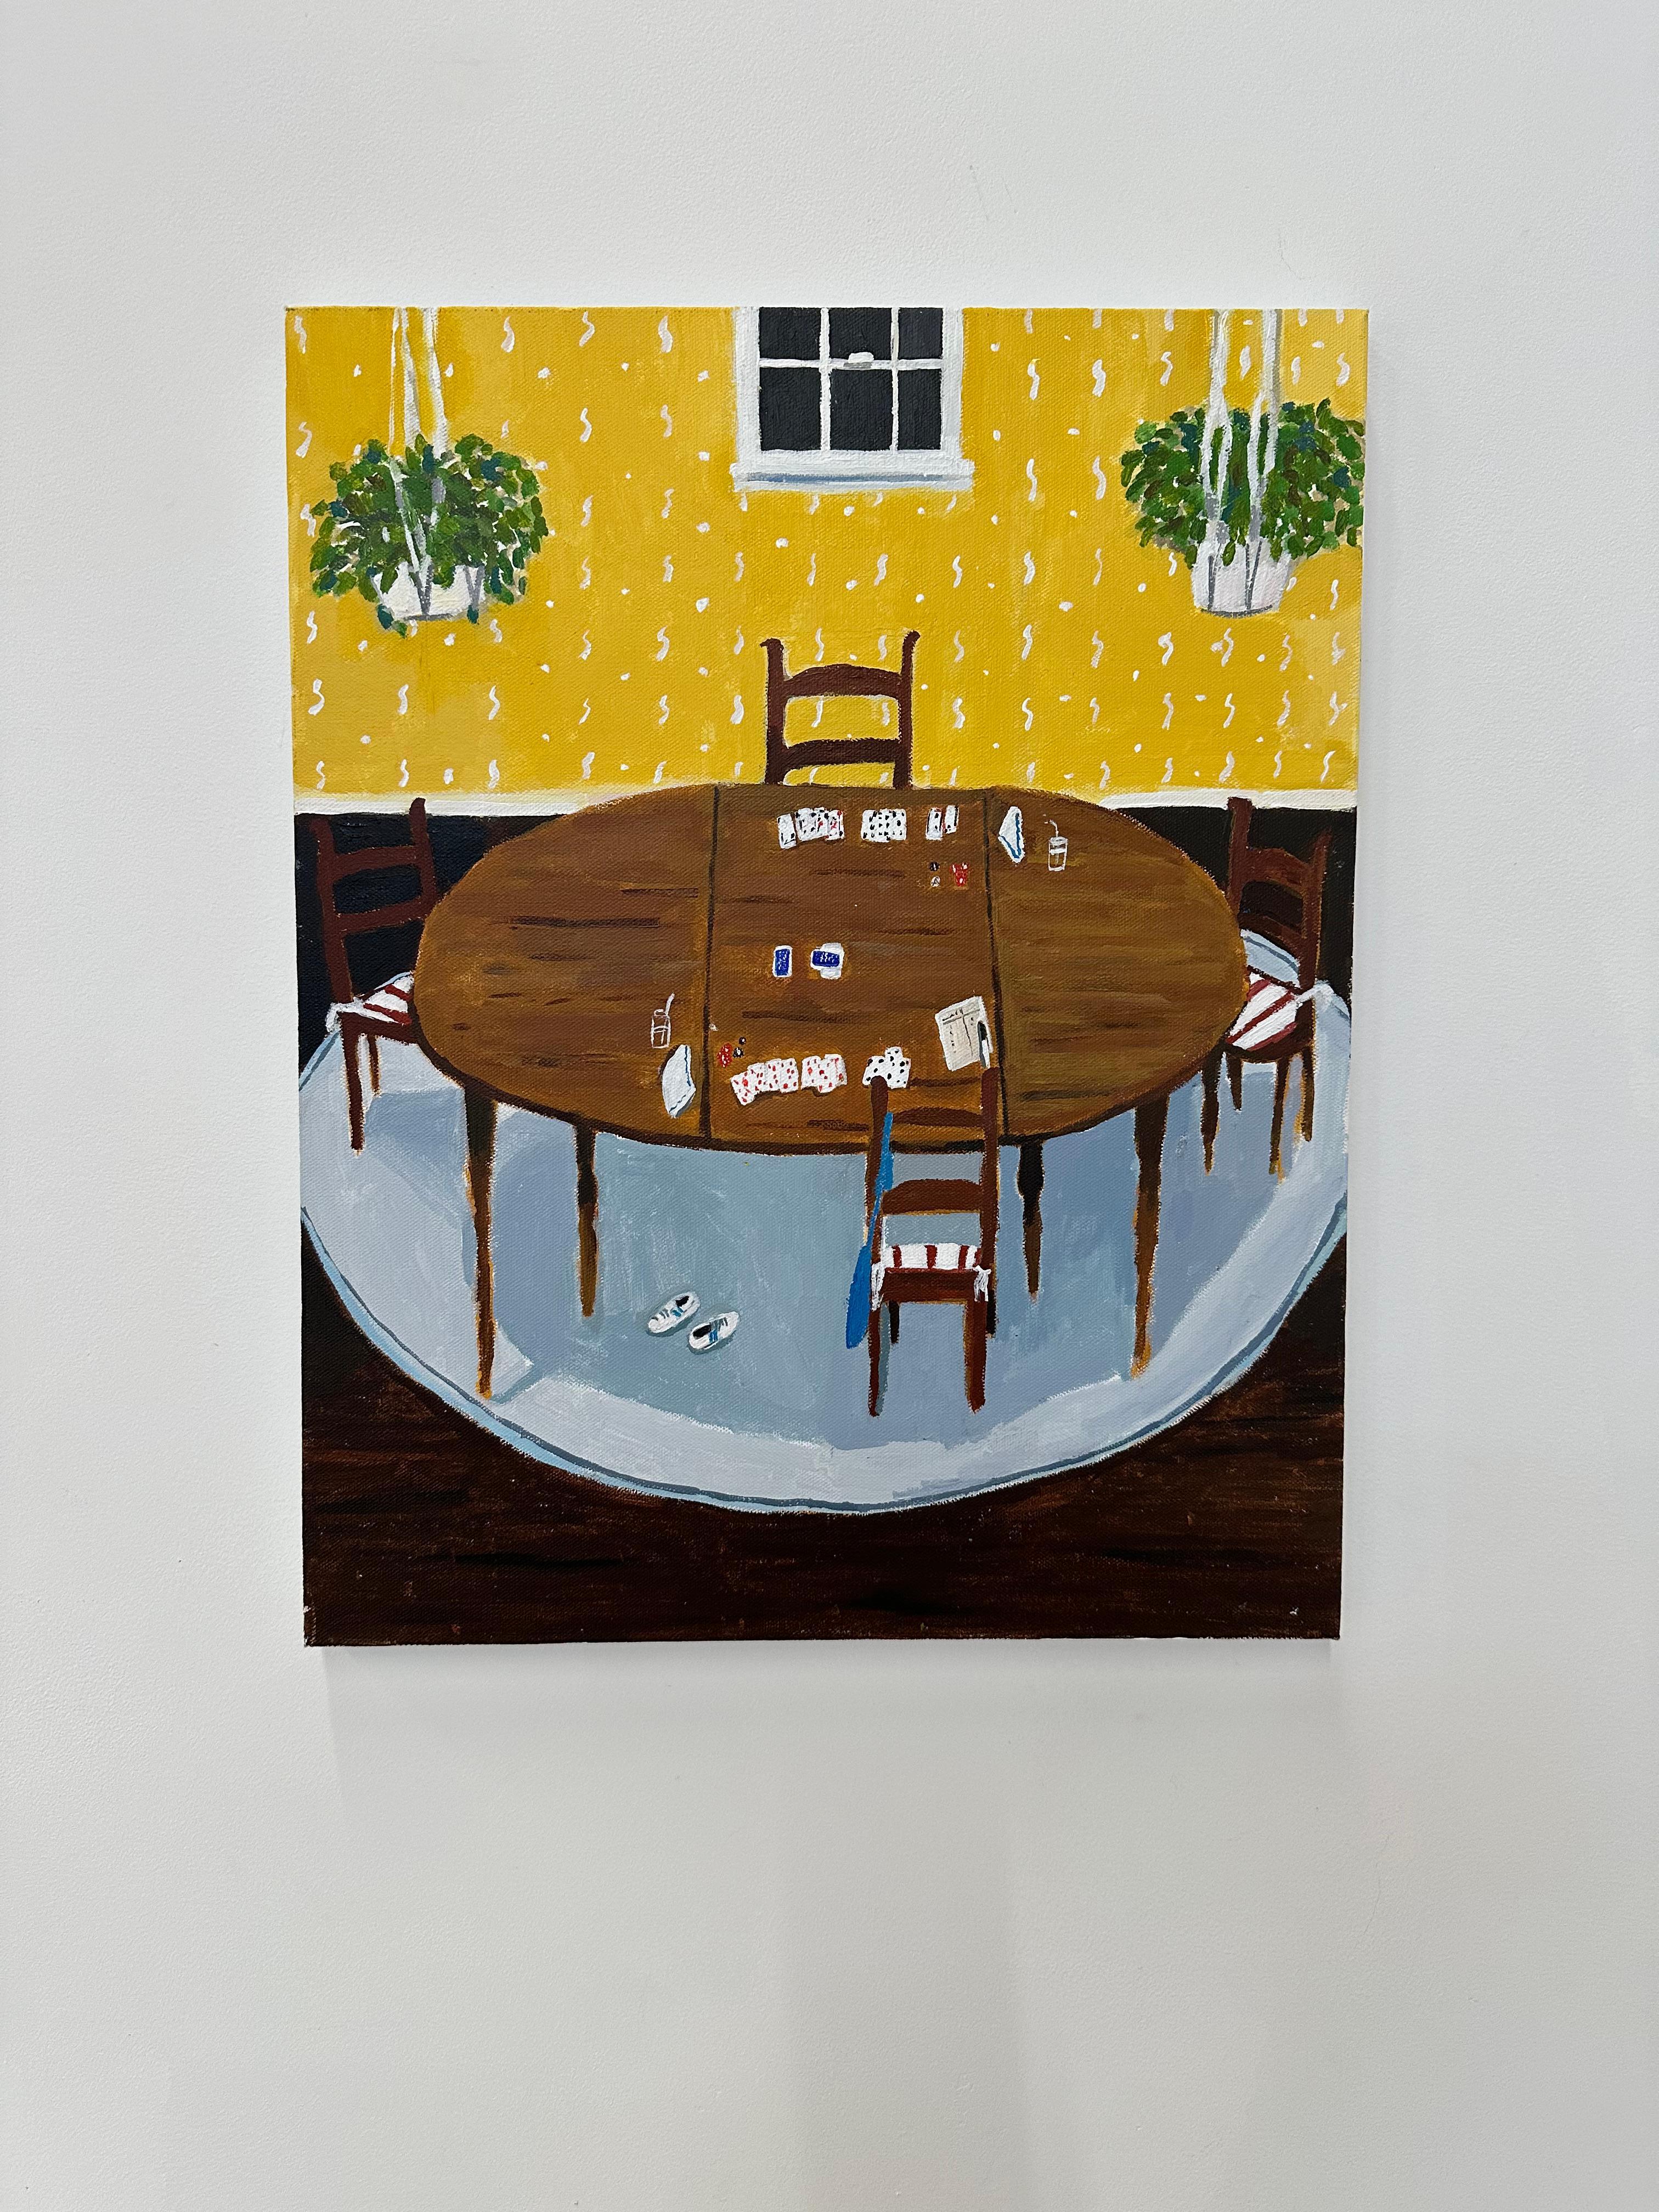 Gin-Spiel im gelben Raum, Esszimmer, Holztisch, Stühle, Kartenspiel, grüne Pflanzen – Painting von Polly Shindler